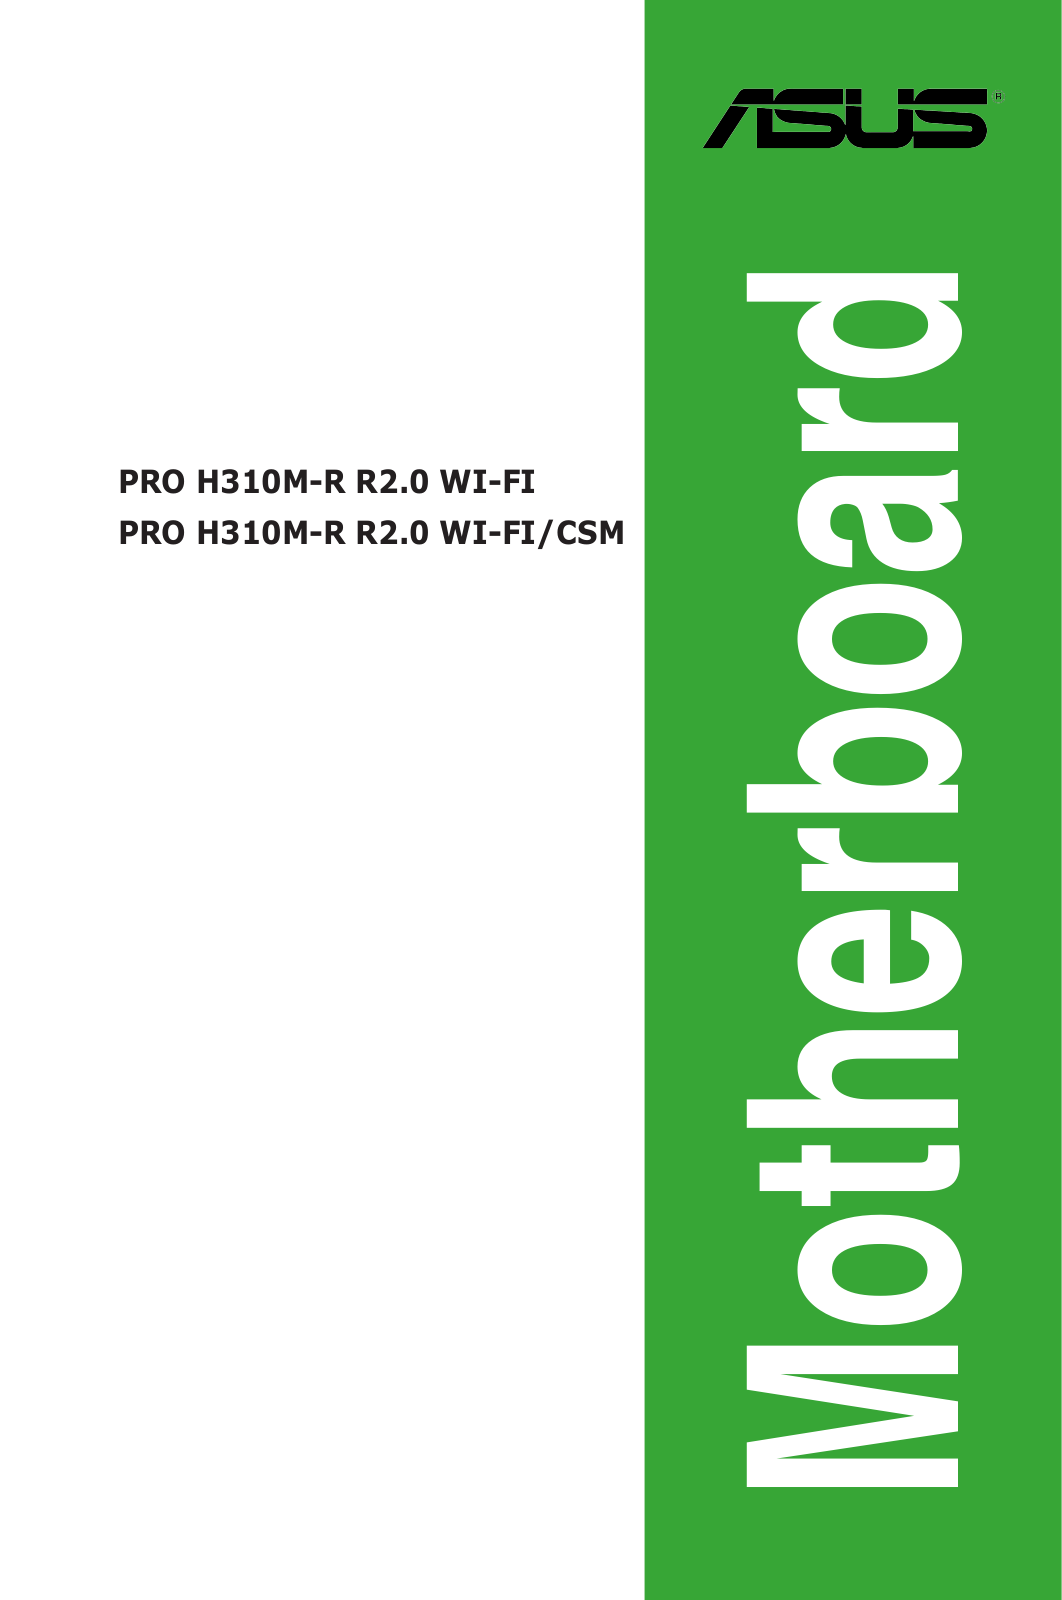 Asus PRO H310M-R R2.0 WI-FI, PRO H310M-R R2.0 WI-FI/CSM Manual